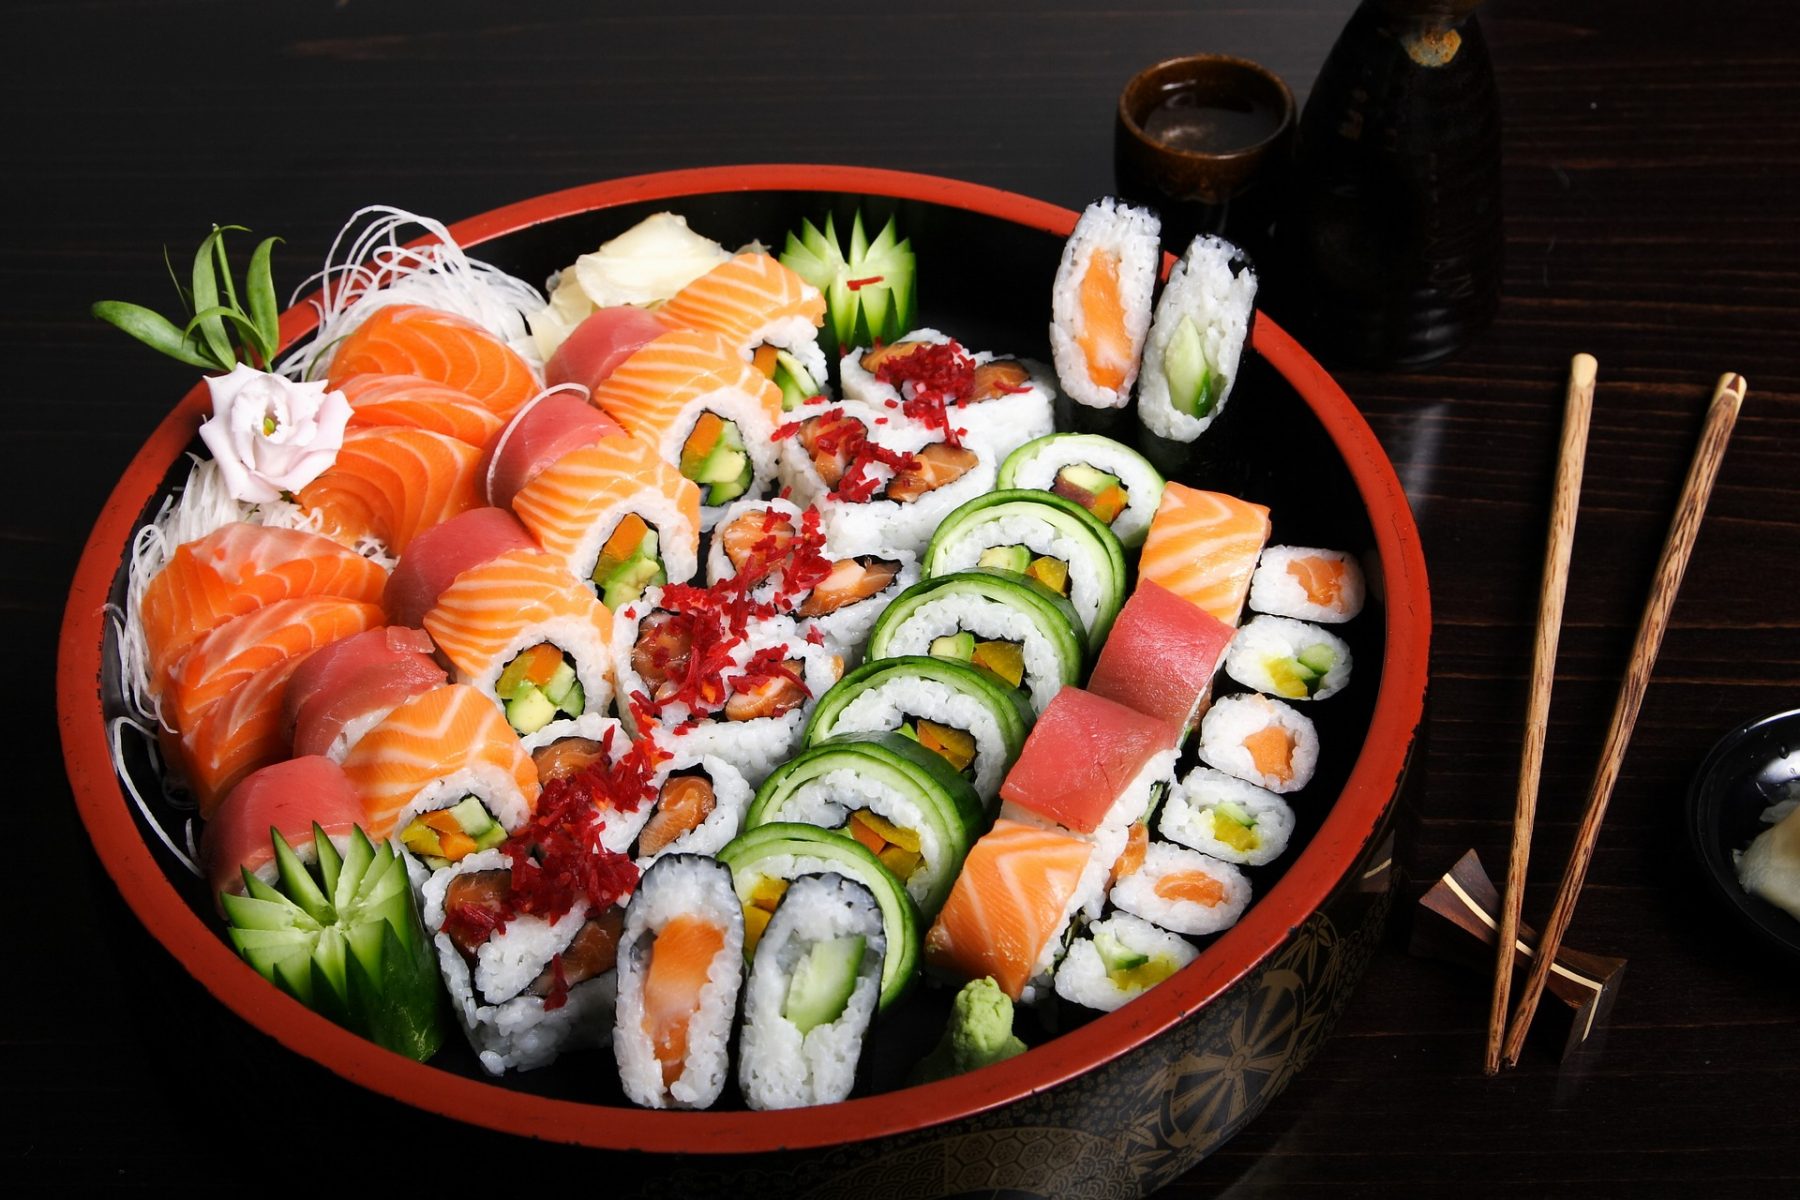 Σούσι διατροφικά οφέλη: Πώς μπορεί να βοηθήσει το sushi την υγεία μας;